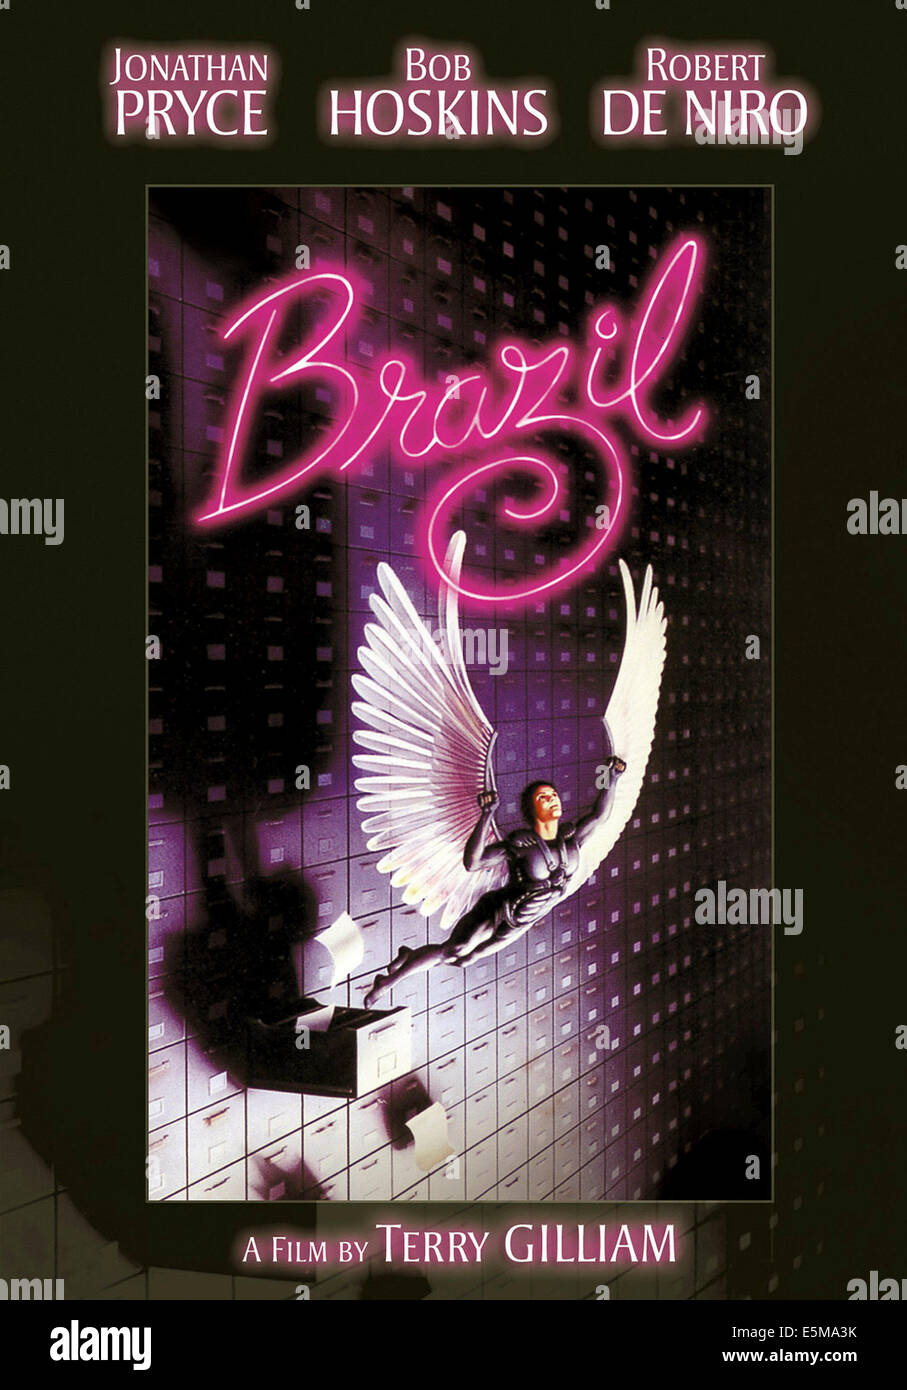 Brésil, 1985), (c) Universal/avec la permission d'Everett Collection Banque D'Images